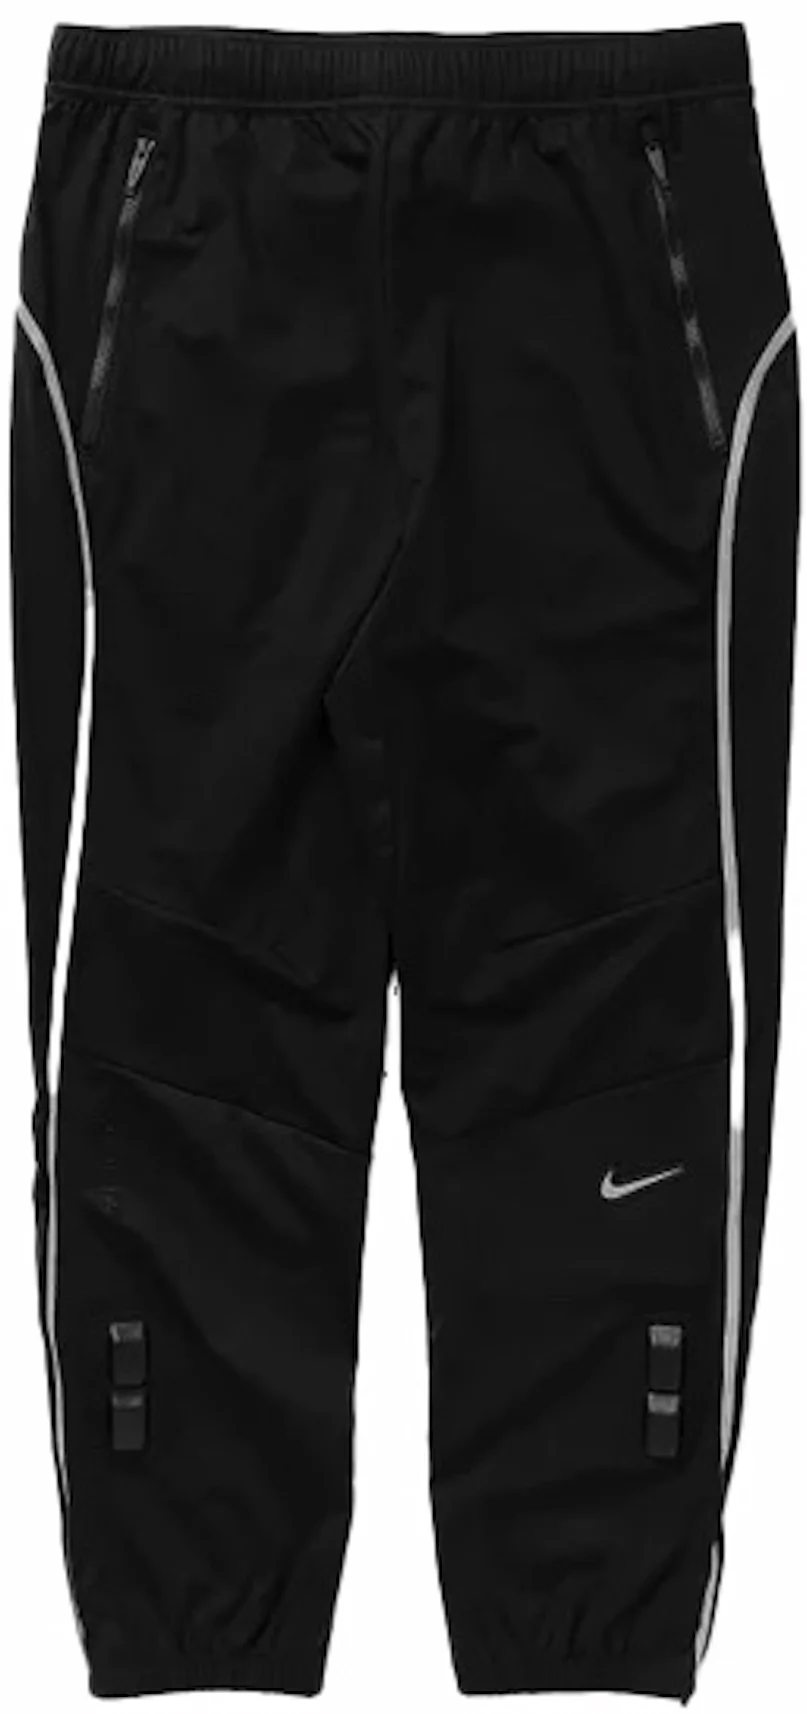 Nike SB Nikelab Pants (black/white)